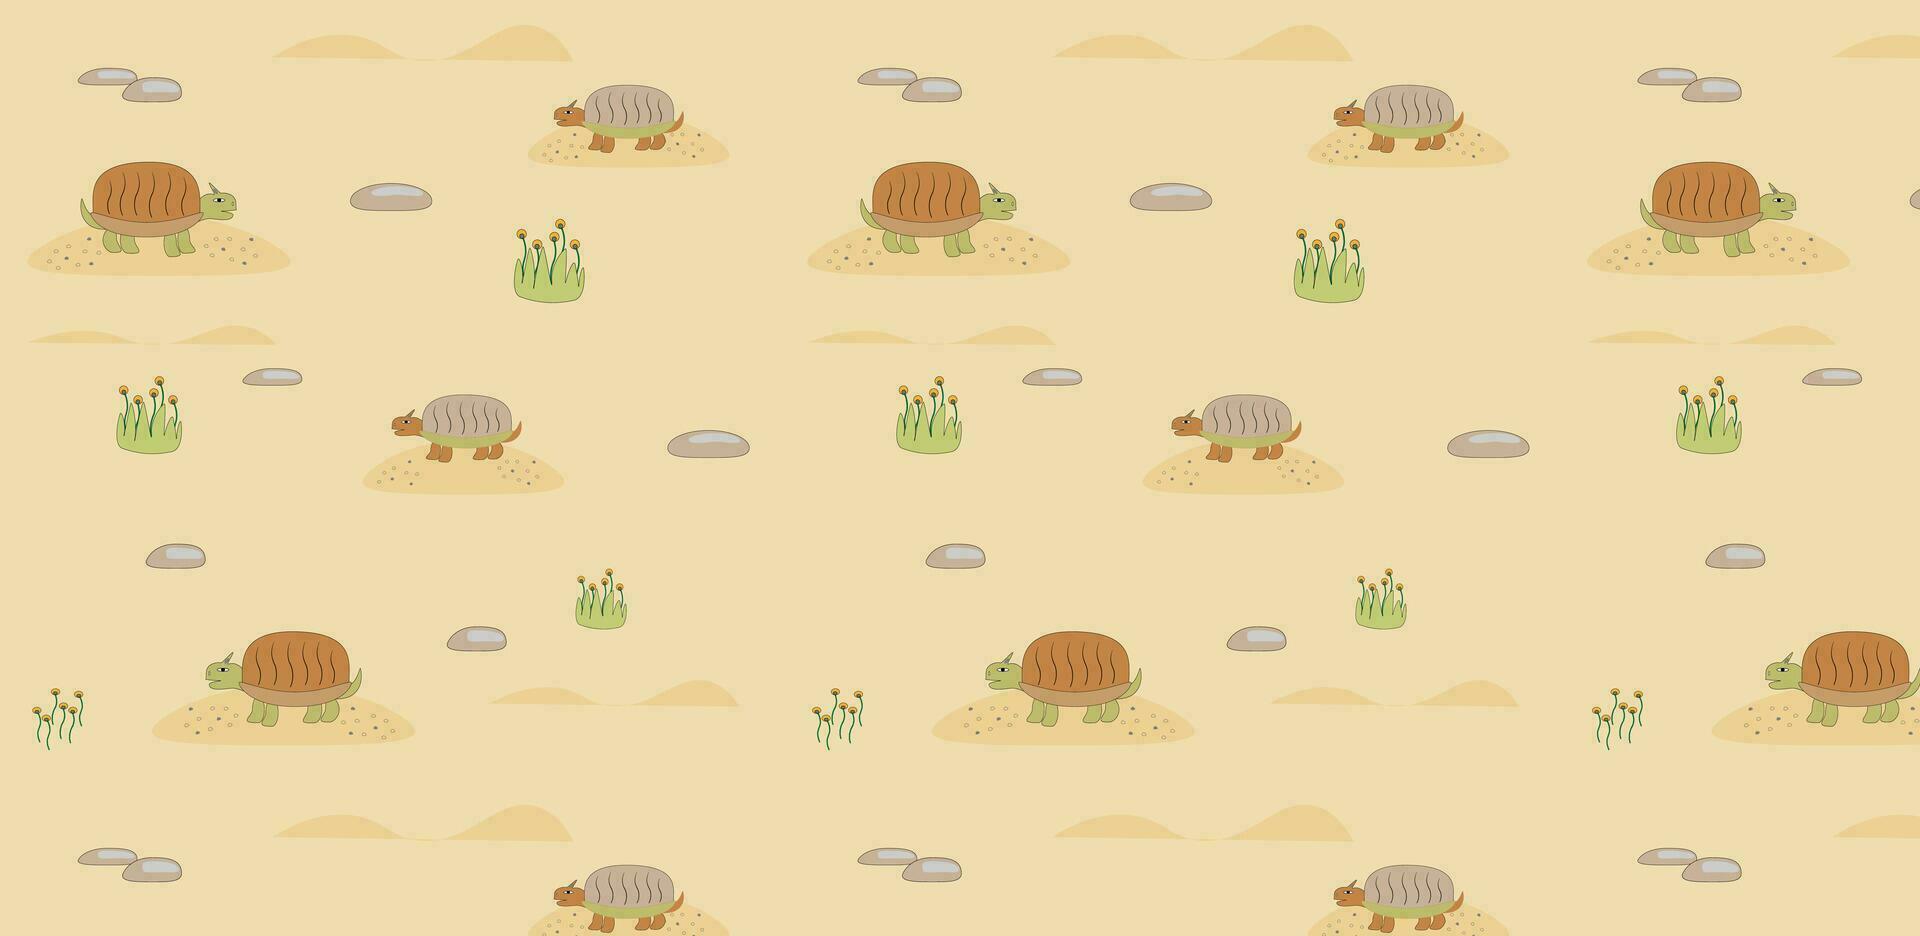 schildpadden in de woestijn kinderachtig naadloos patroon. eps10 vector